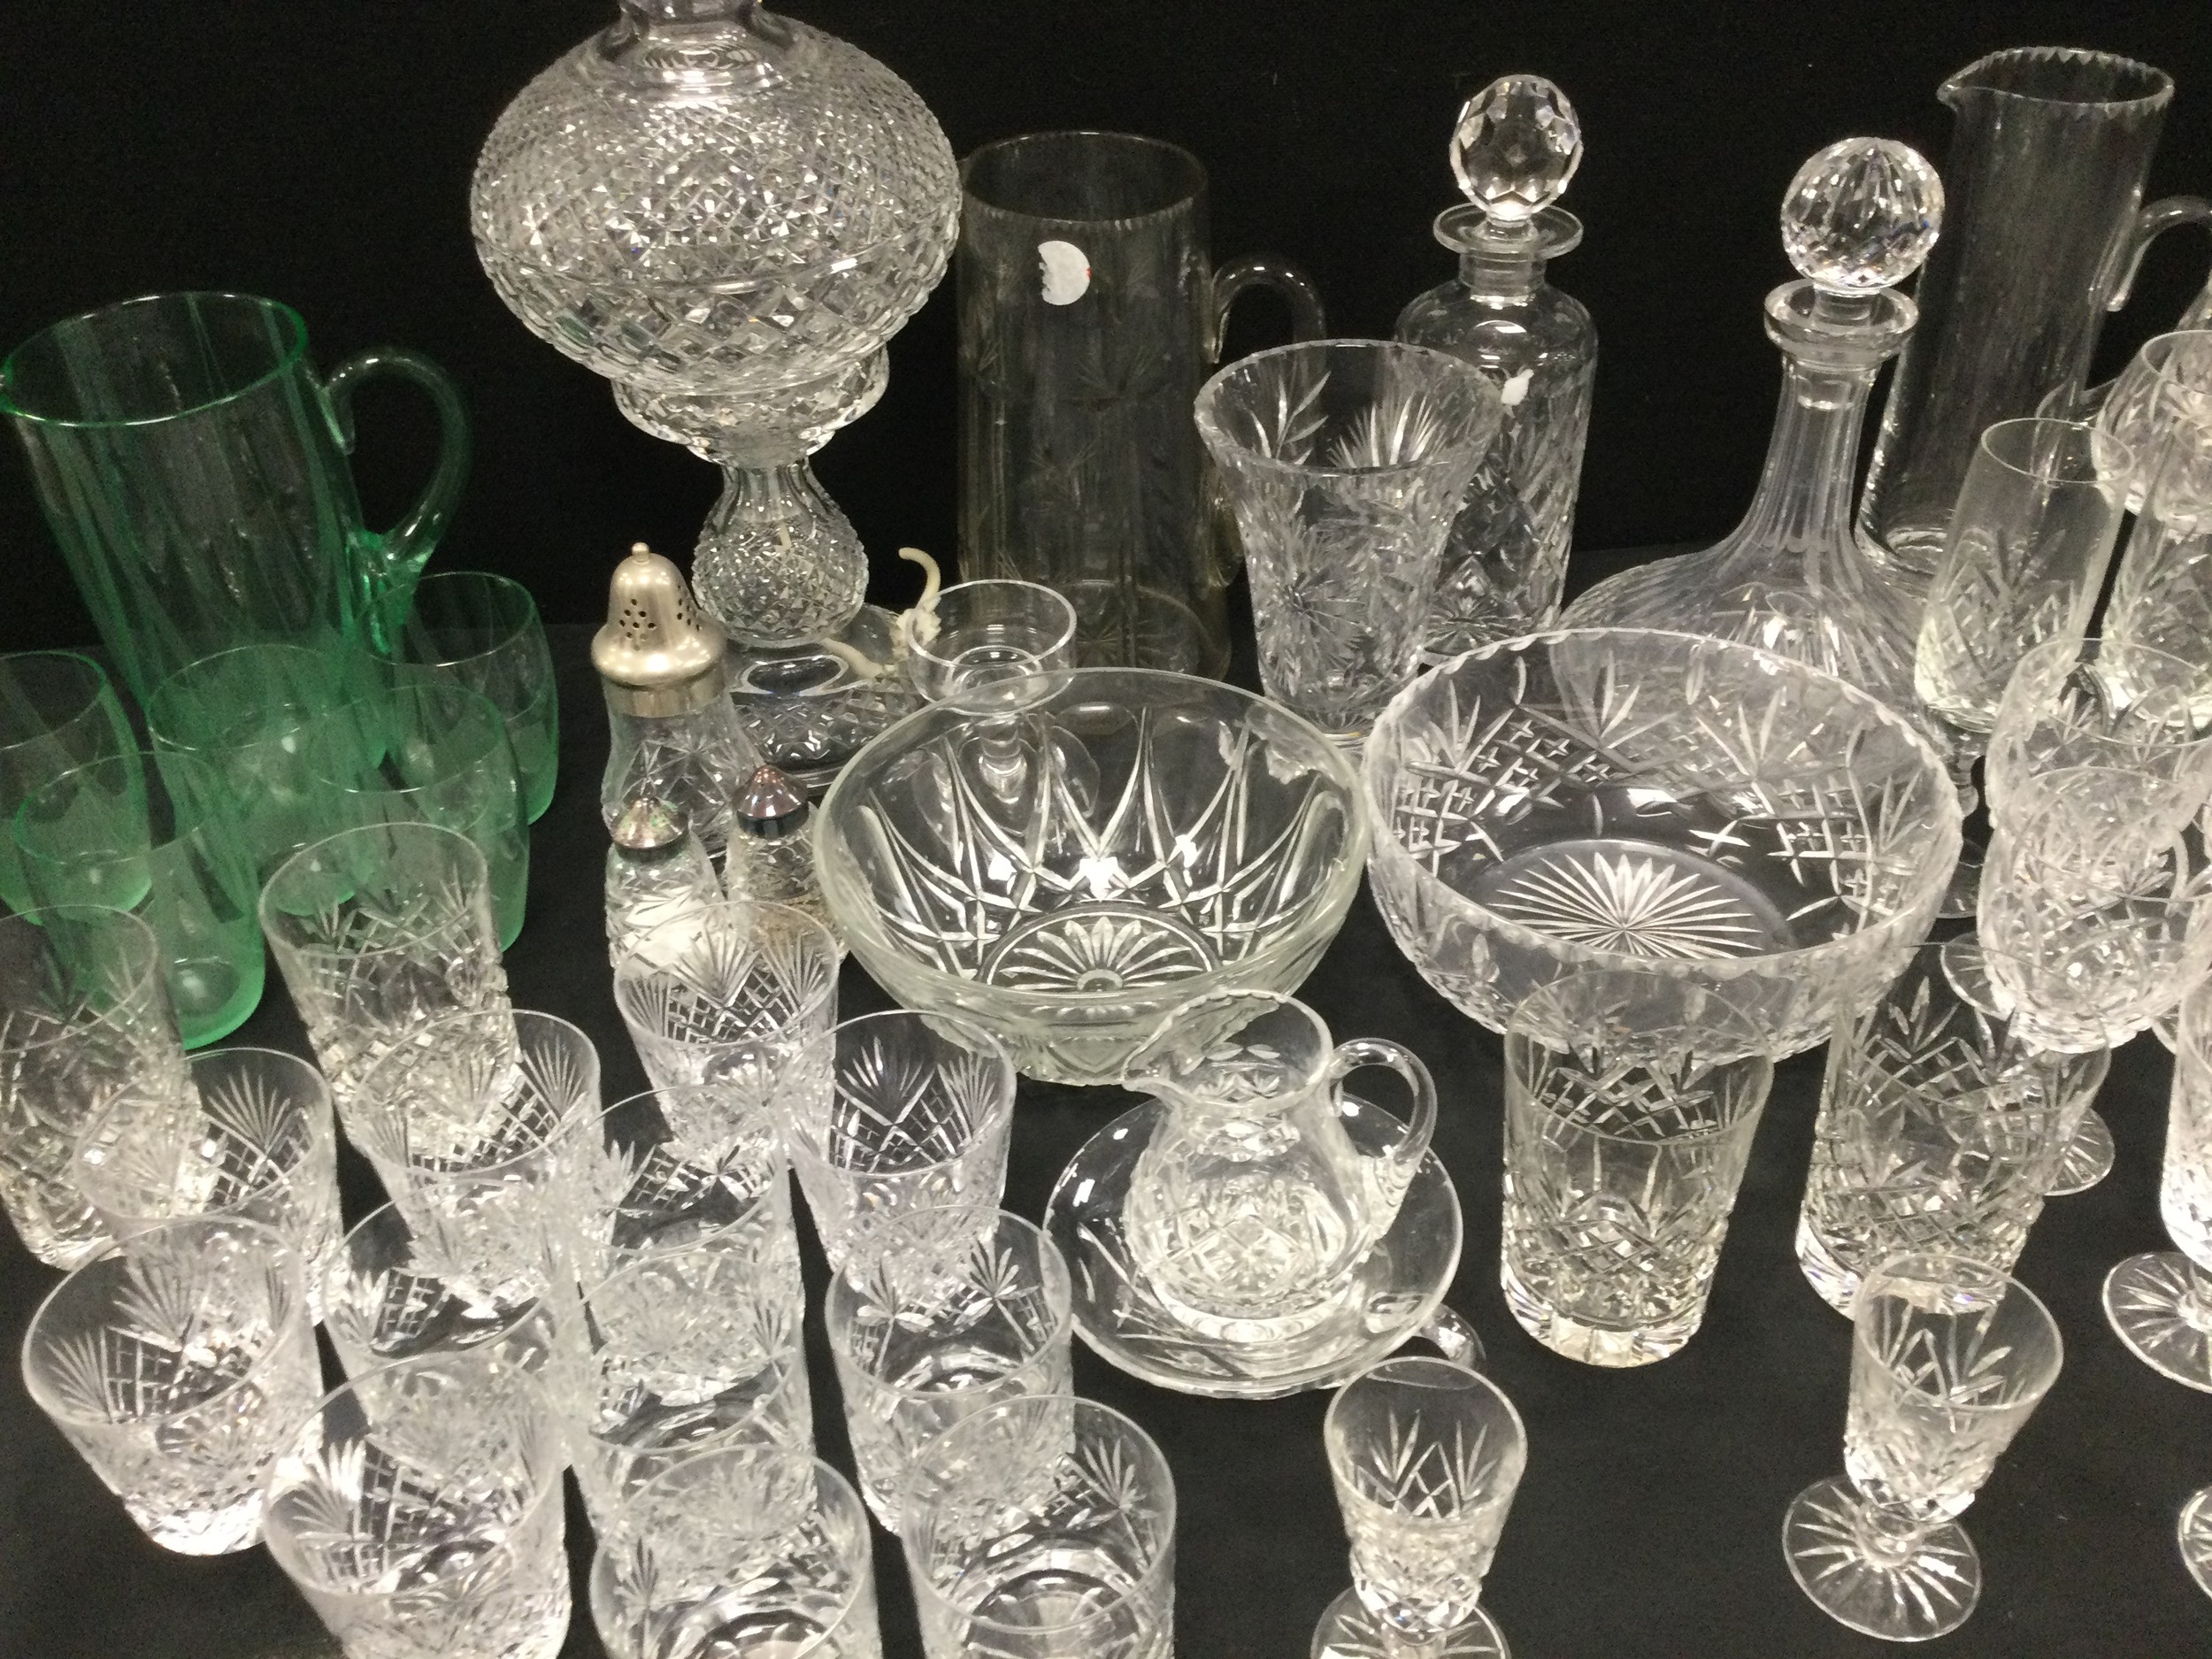 Glass ware - cut glass mushroom lamp, 35cm high, six cut wine glasses, six champagne flutes, six - Image 2 of 3